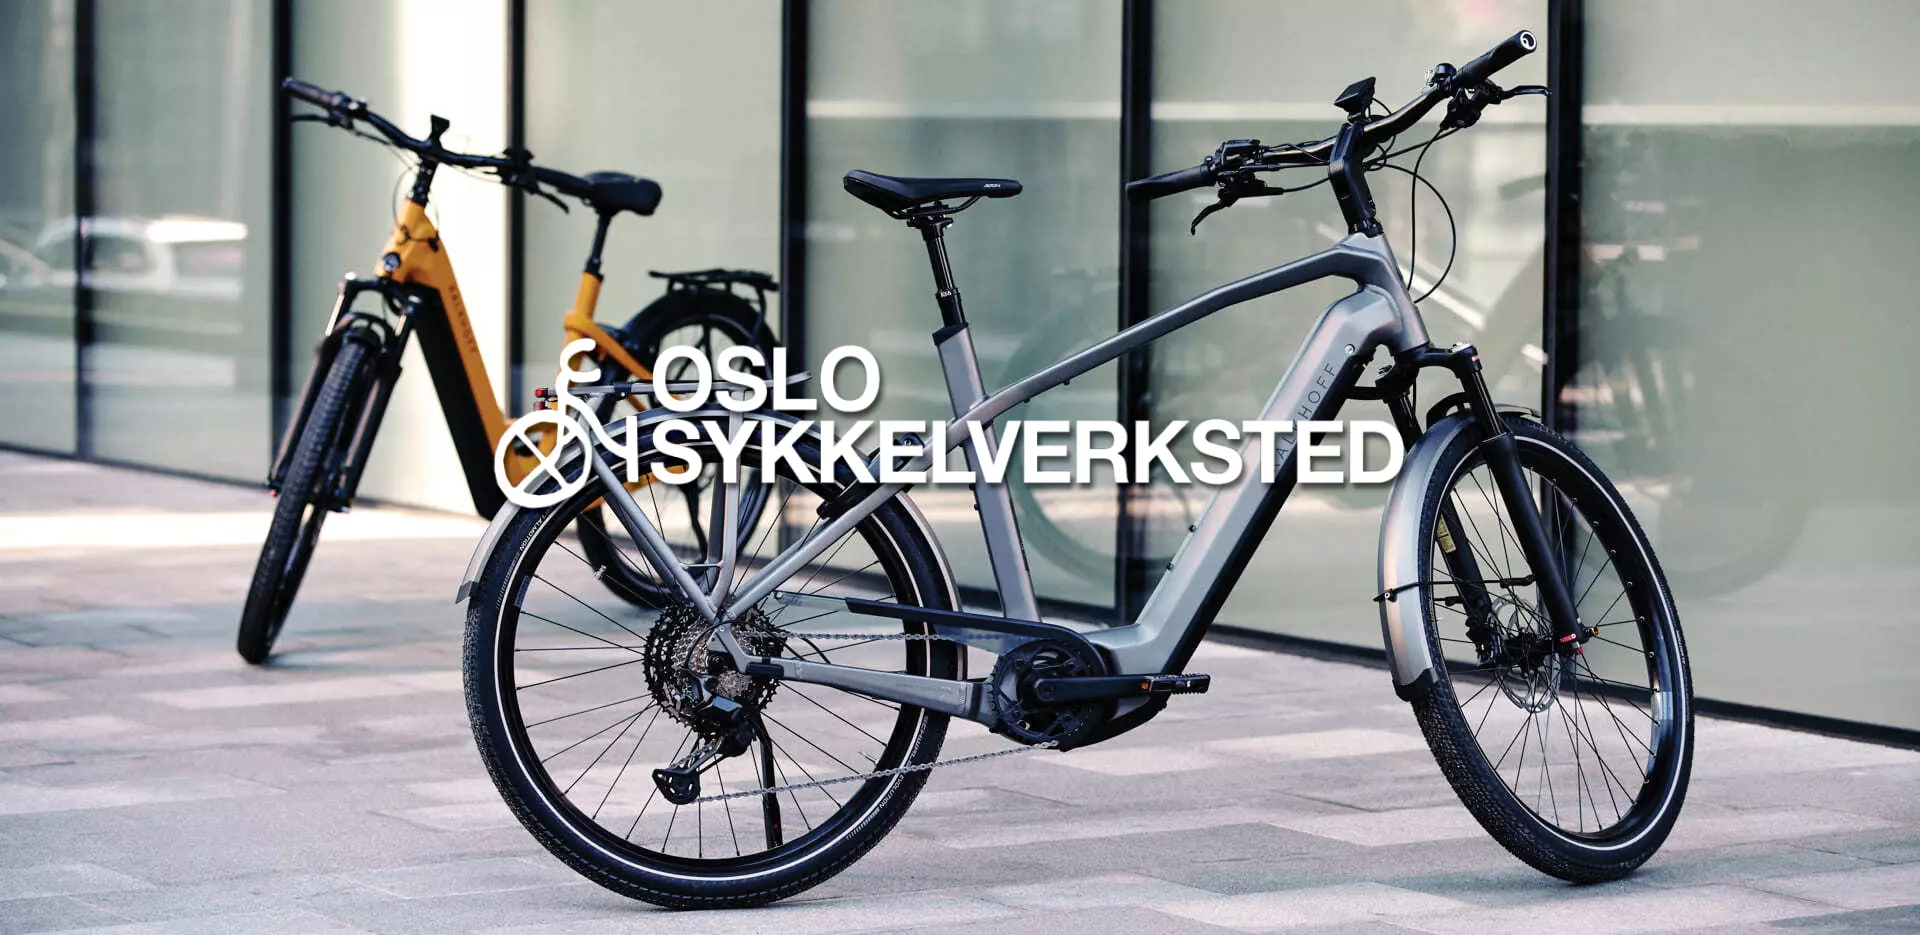 Bike shop in Oslo,